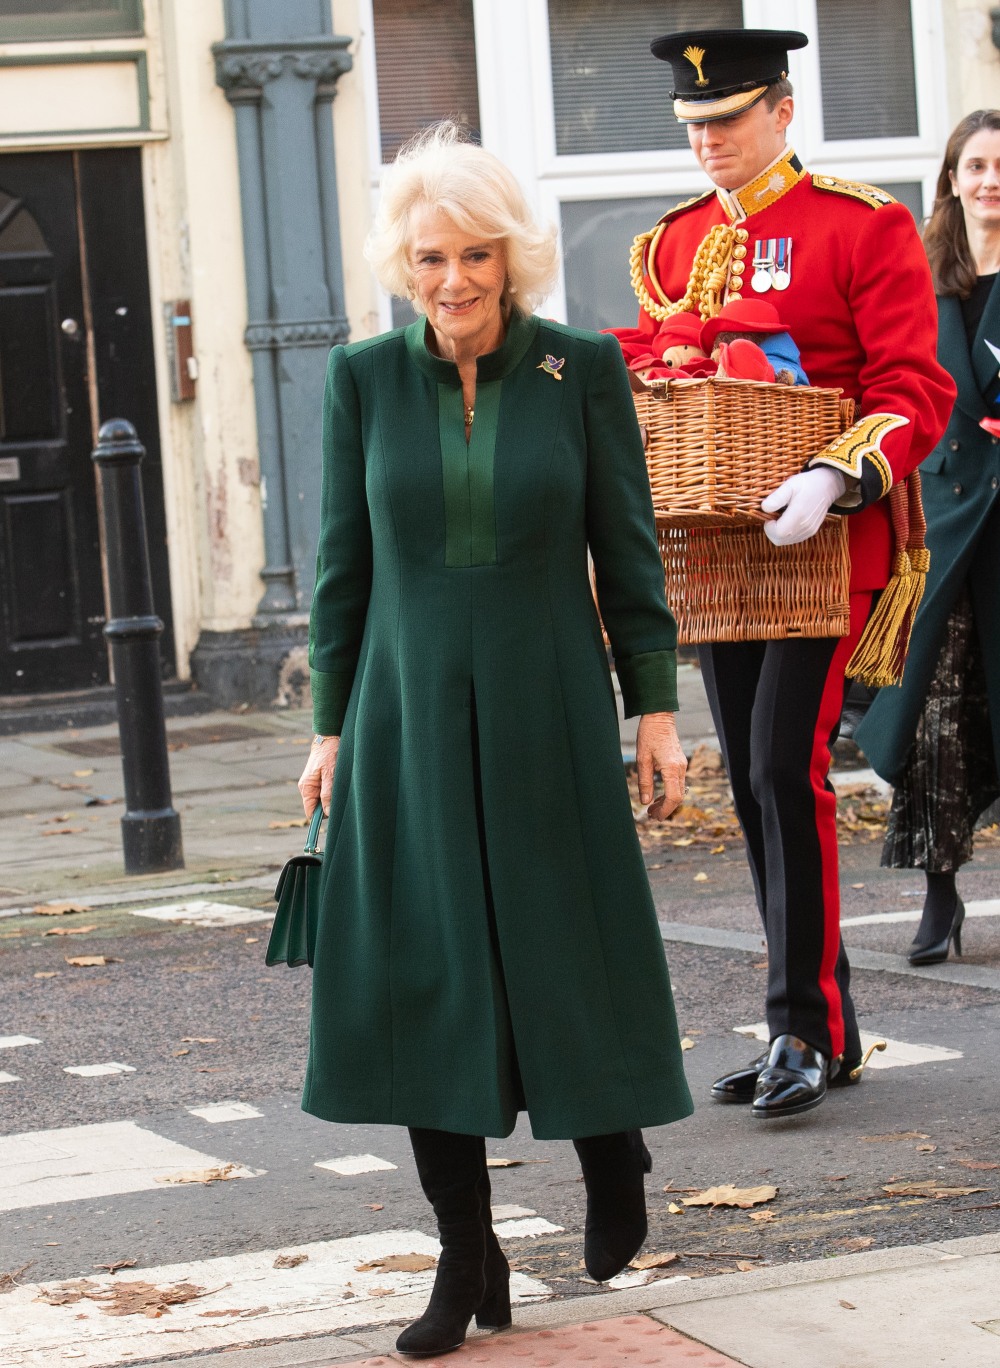 şirret | Kraliçe Camilla beceriksizce Paddington Bears'ı anaokulu çocuklarına dağıttı